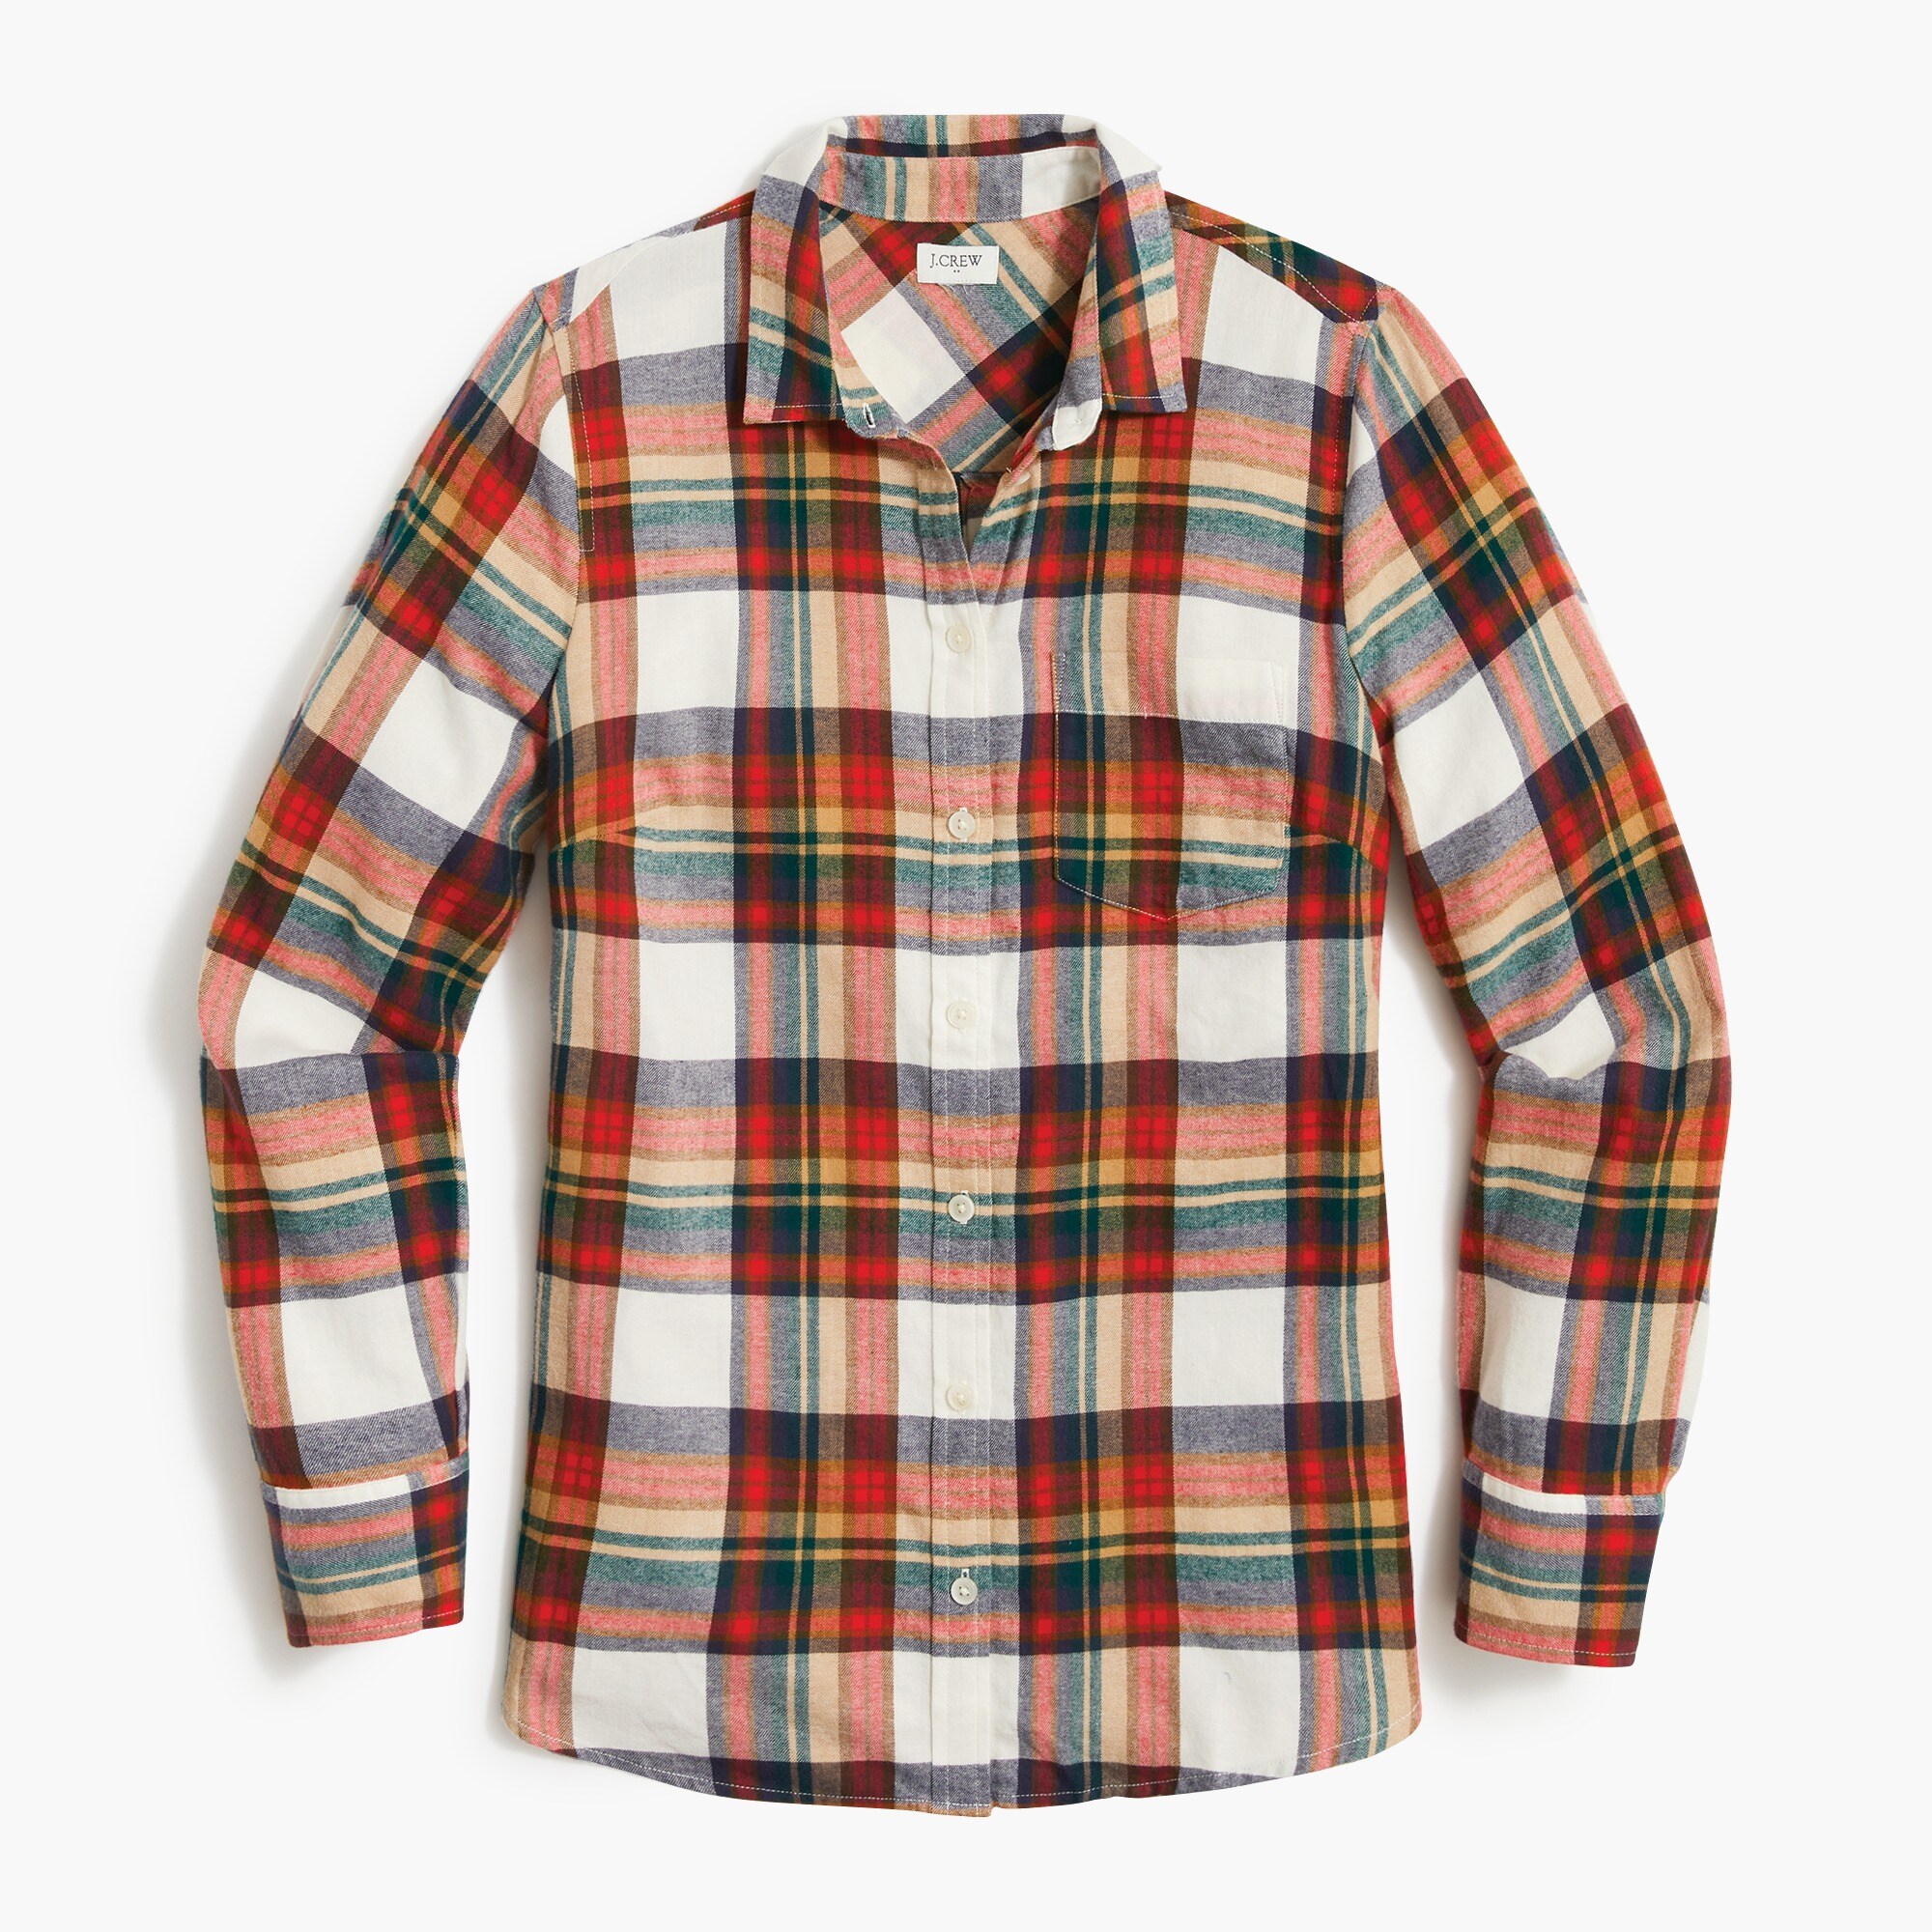  Plaid flannel shirt